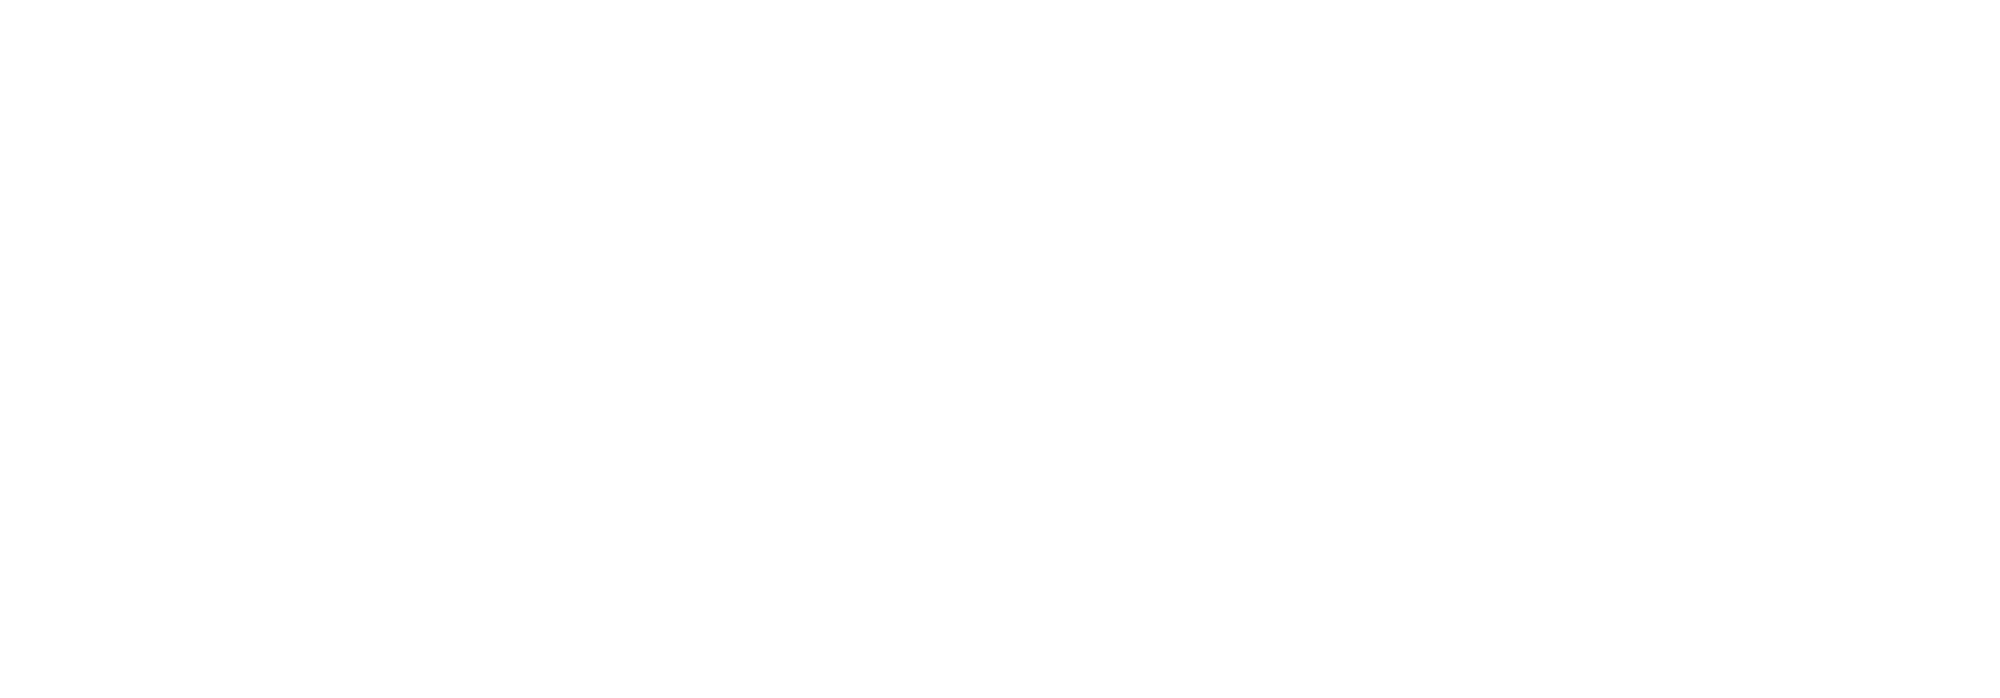 Granaria